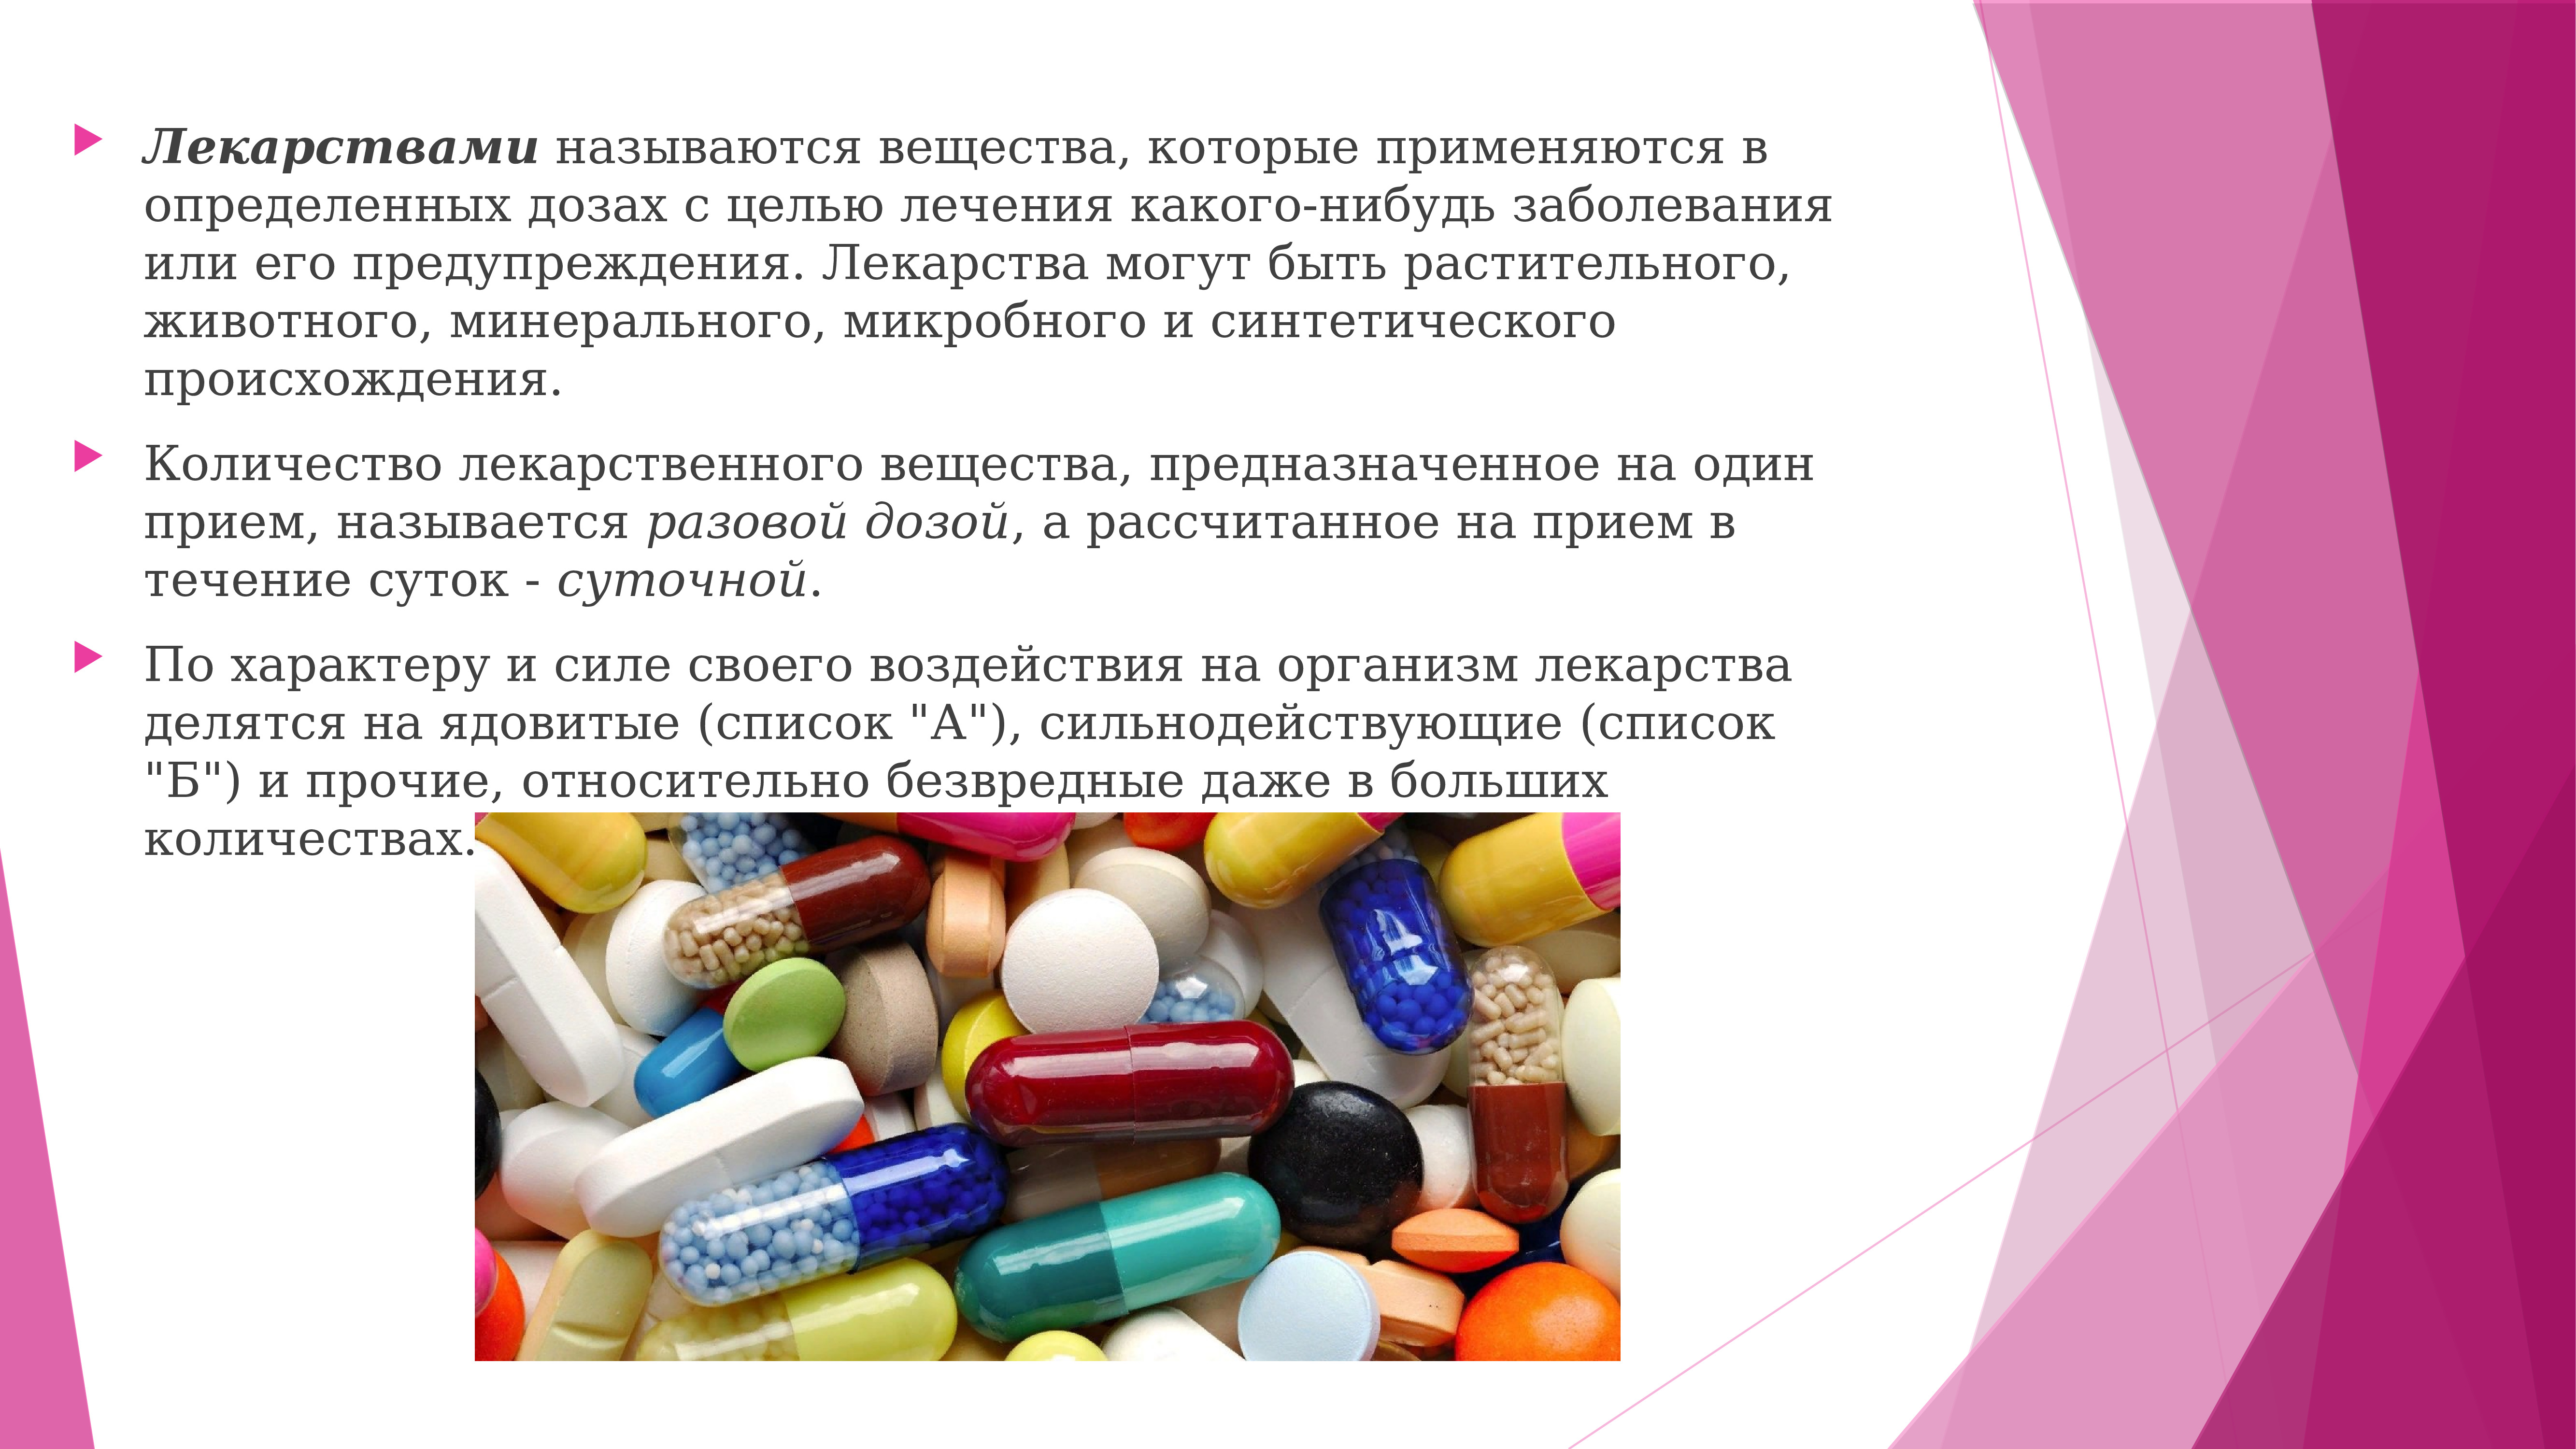 Определенные средства или вещества. Лекарственное вещество это. Слайд с лекарственными препаратами. Применение лекарственных веществ. Назначение лекарственных средств.